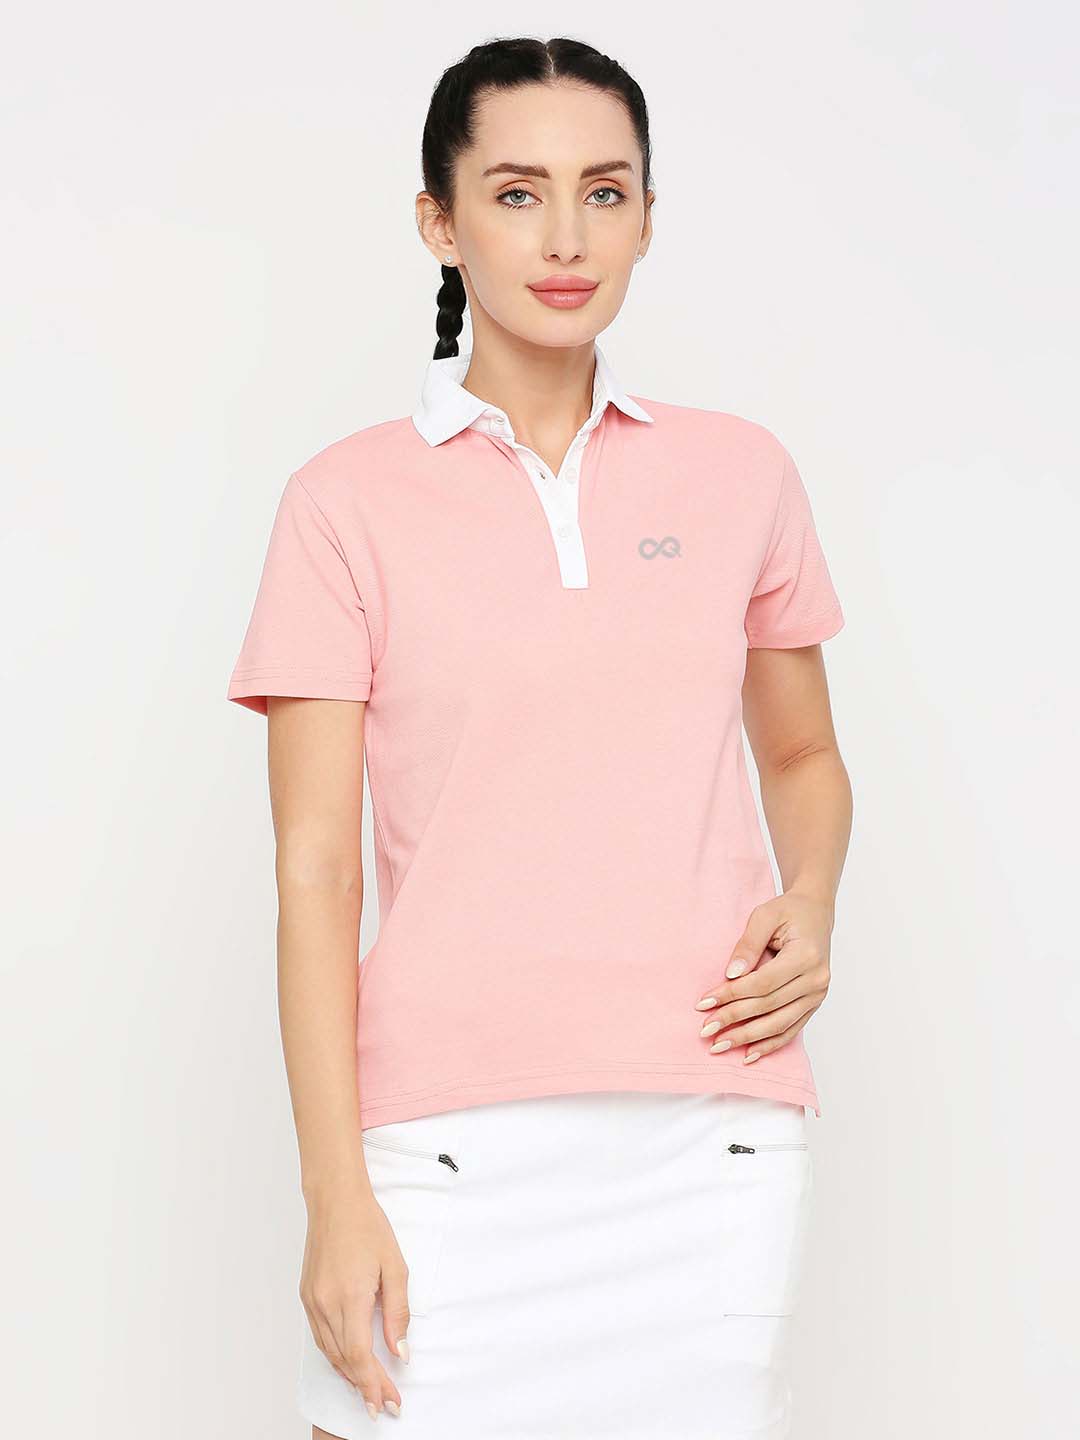 Women's Tennis Polo Shirt - Pink